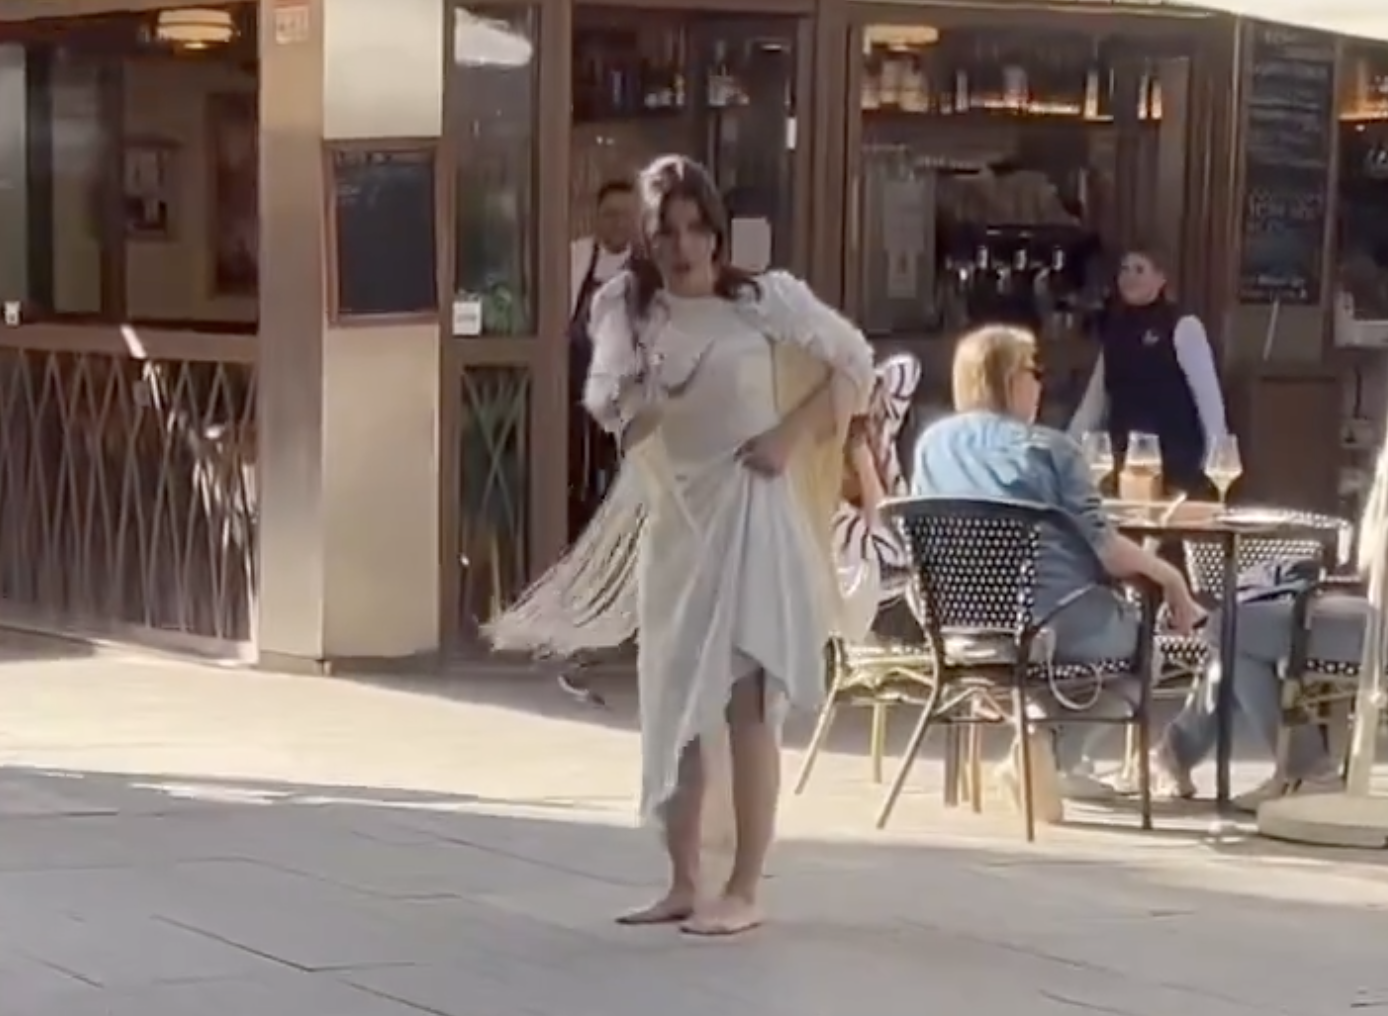 La mujer vestida de novia que ha causado revuelo en el centro de Sevilla.